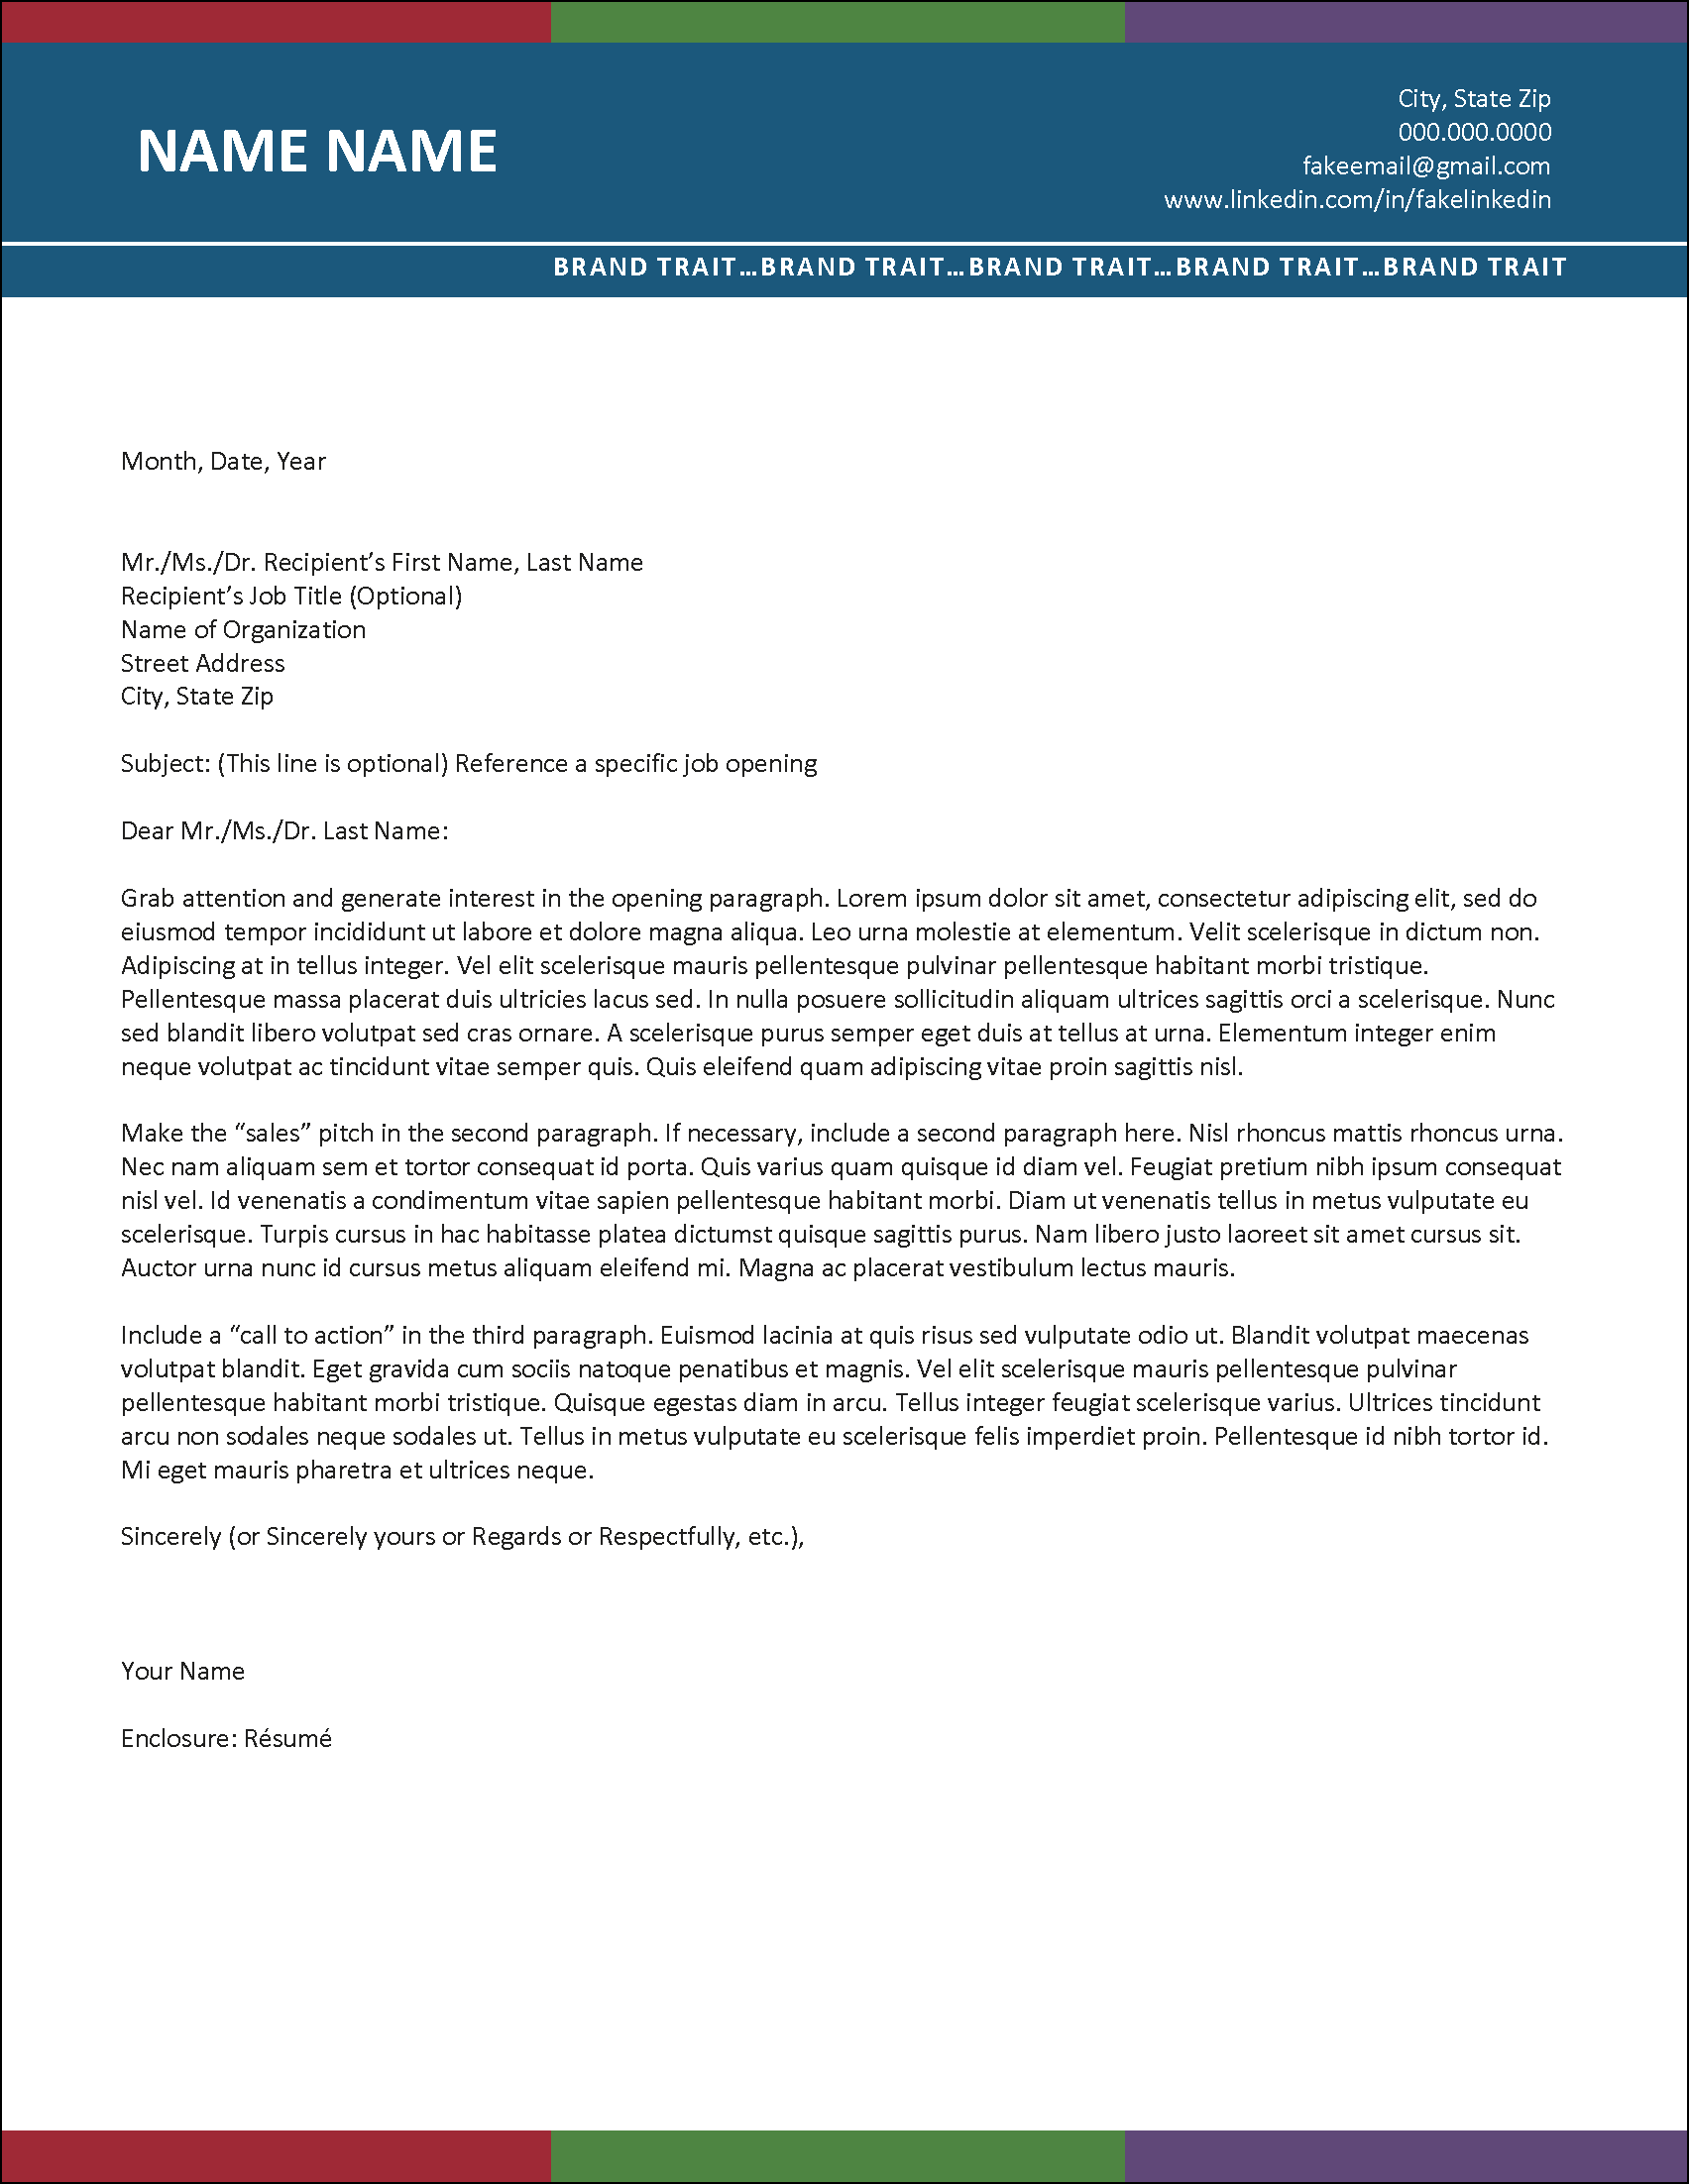 CareerPulse Cover Letter